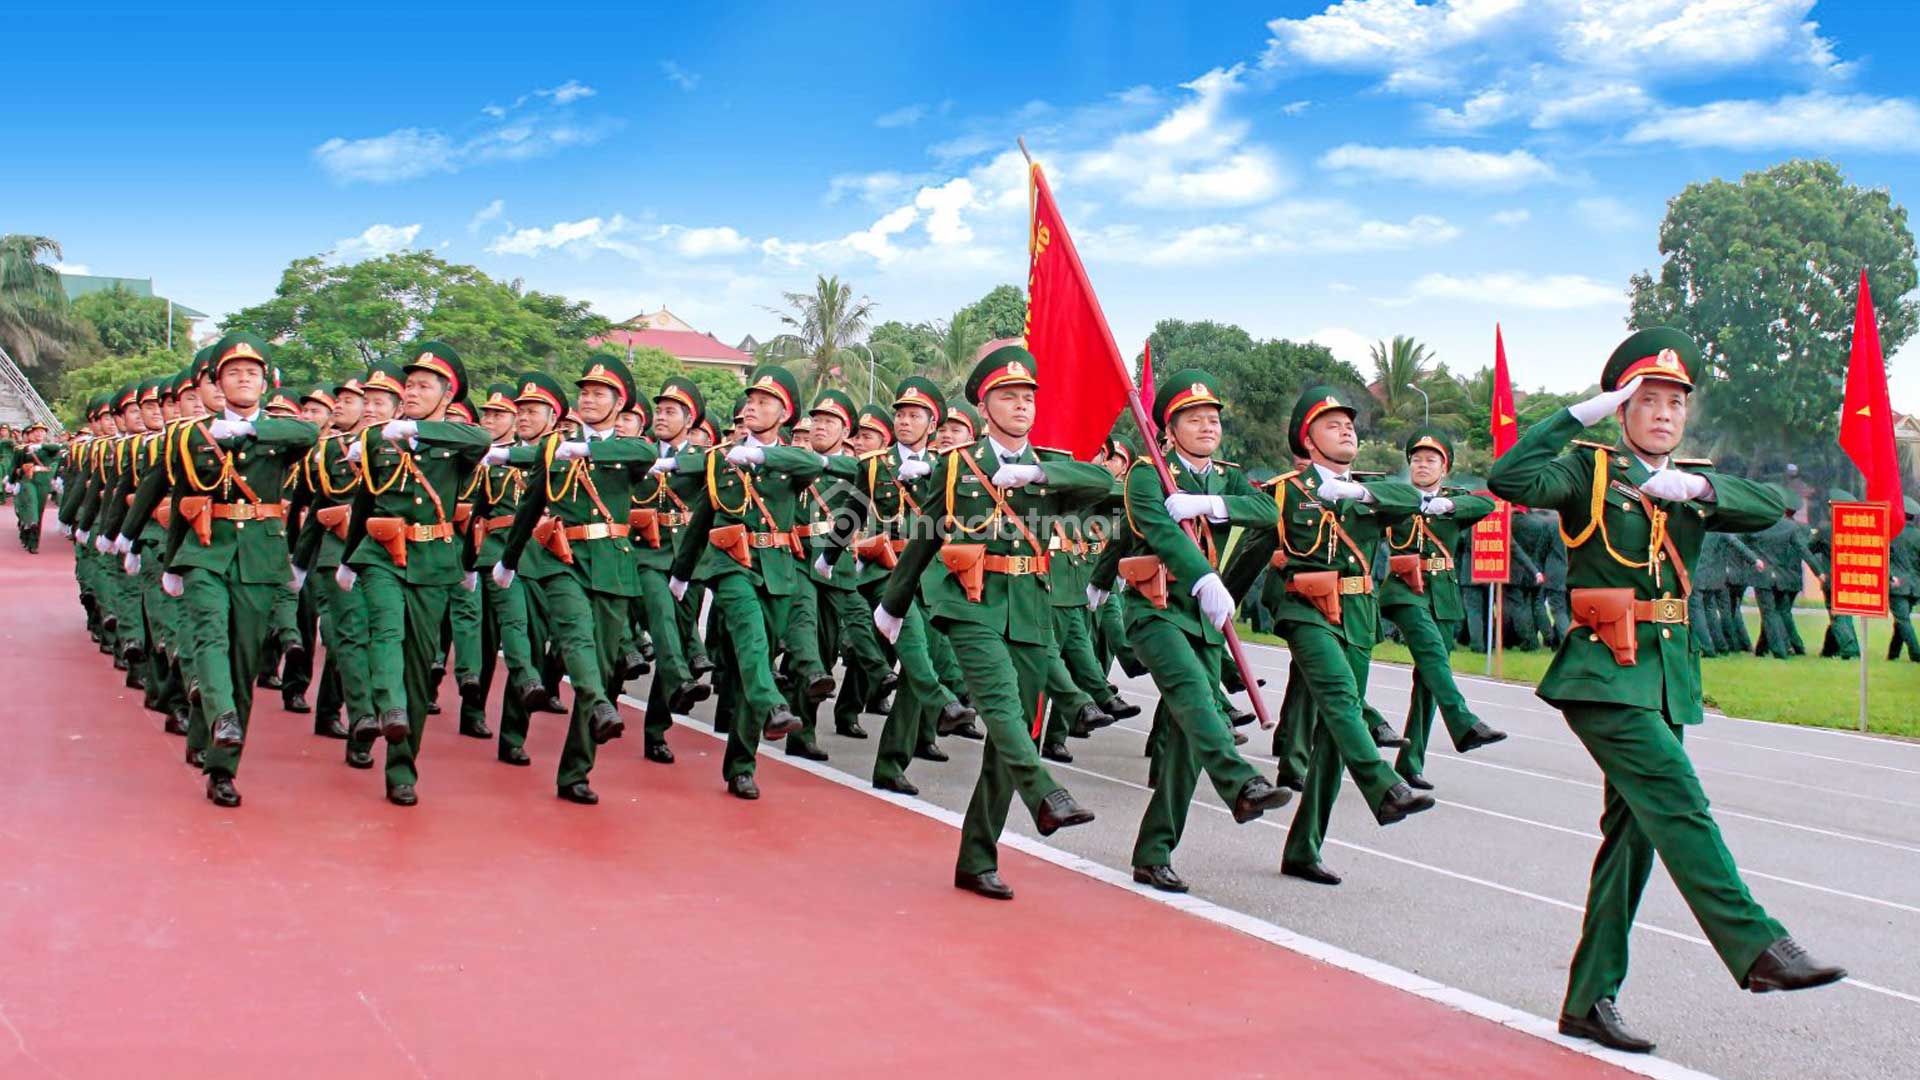 Quân Đội Nhân Dân Việt Nam là niềm tự hào của dân tộc ta, được thành lập từ trái tim của những người con Việt Nam yêu nước. Hãy cùng chứng kiến khoảnh khắc lịch sử này để hiểu thêm về nguồn gốc, chặng đường và sự trưởng thành của Quân Đội Nhân Dân Việt Nam và vinh danh công lao của những người lính chiến đấu vì sự tự do, độc lập của đất nước.